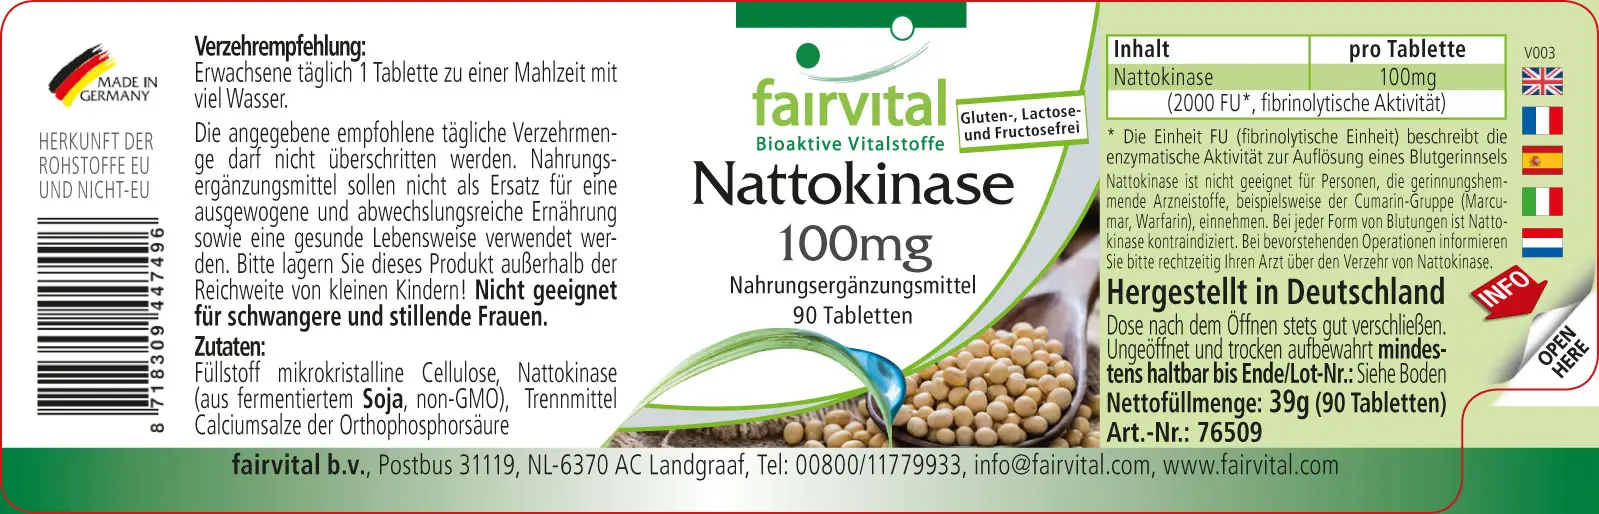 Nattokinase 100mg - 90 comprimés